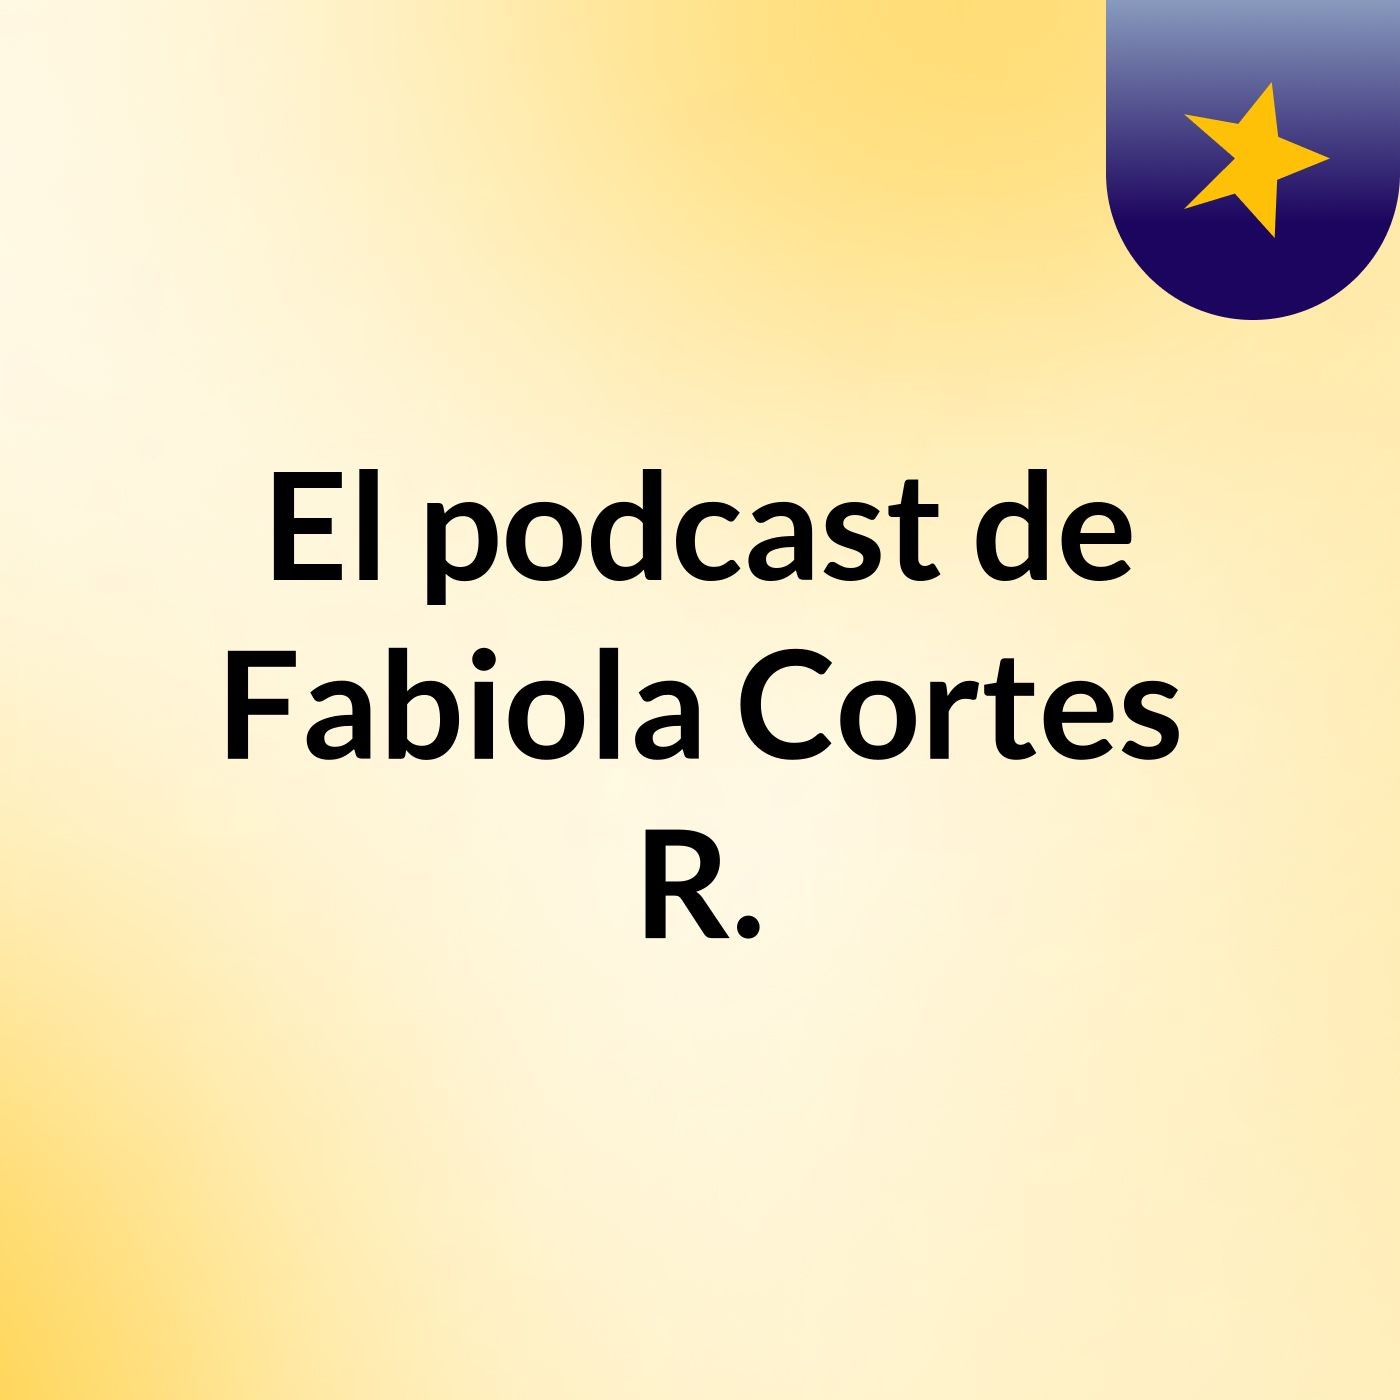 El podcast de Fabiola Cortes R.